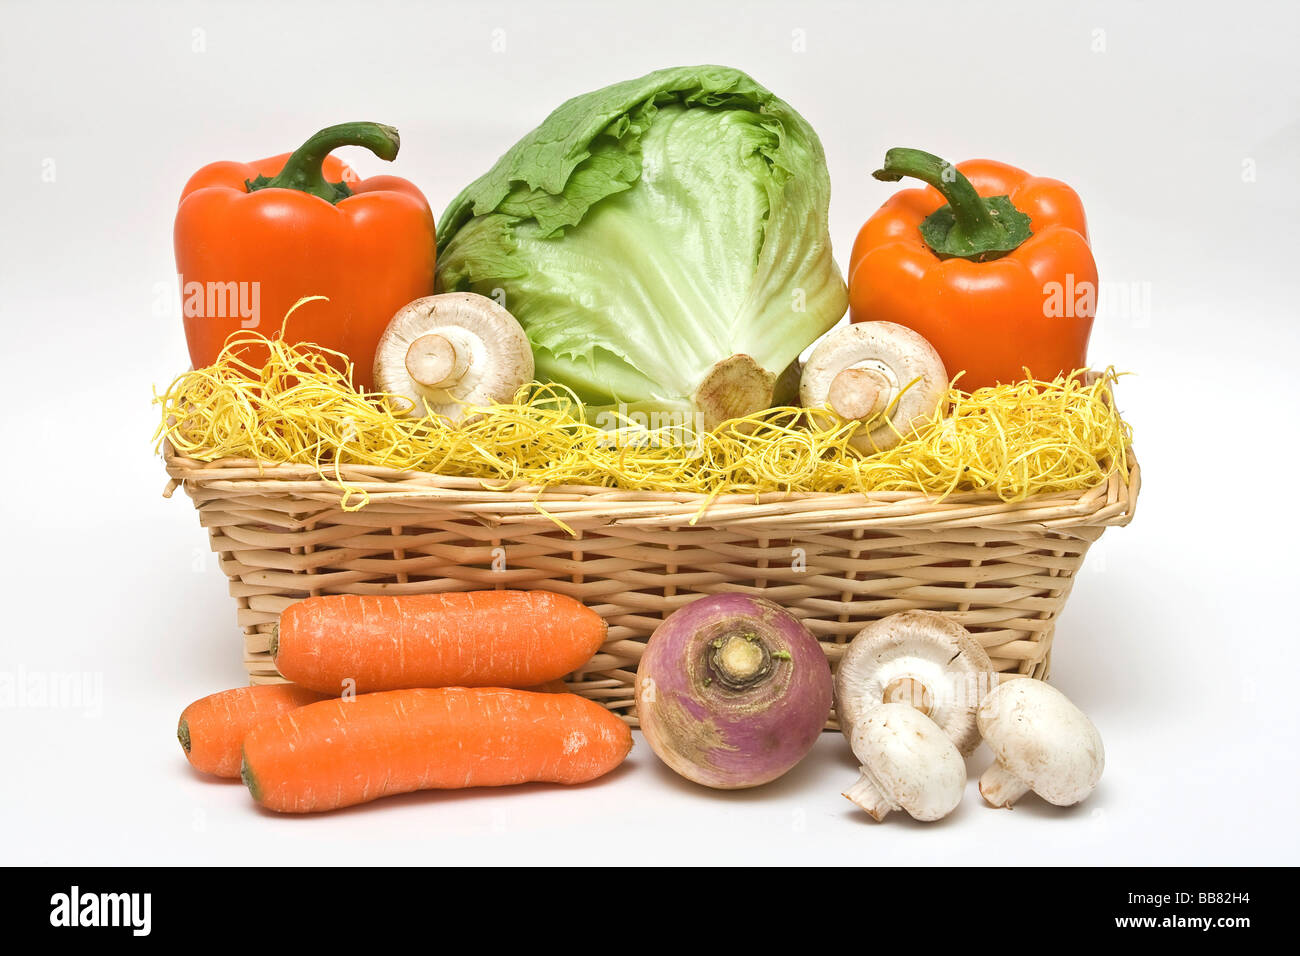 Farbige Gemüse-korb, Eisbergsalat, Orange Paprika, Champignons, frische Karotten, runde raddish Stockfoto